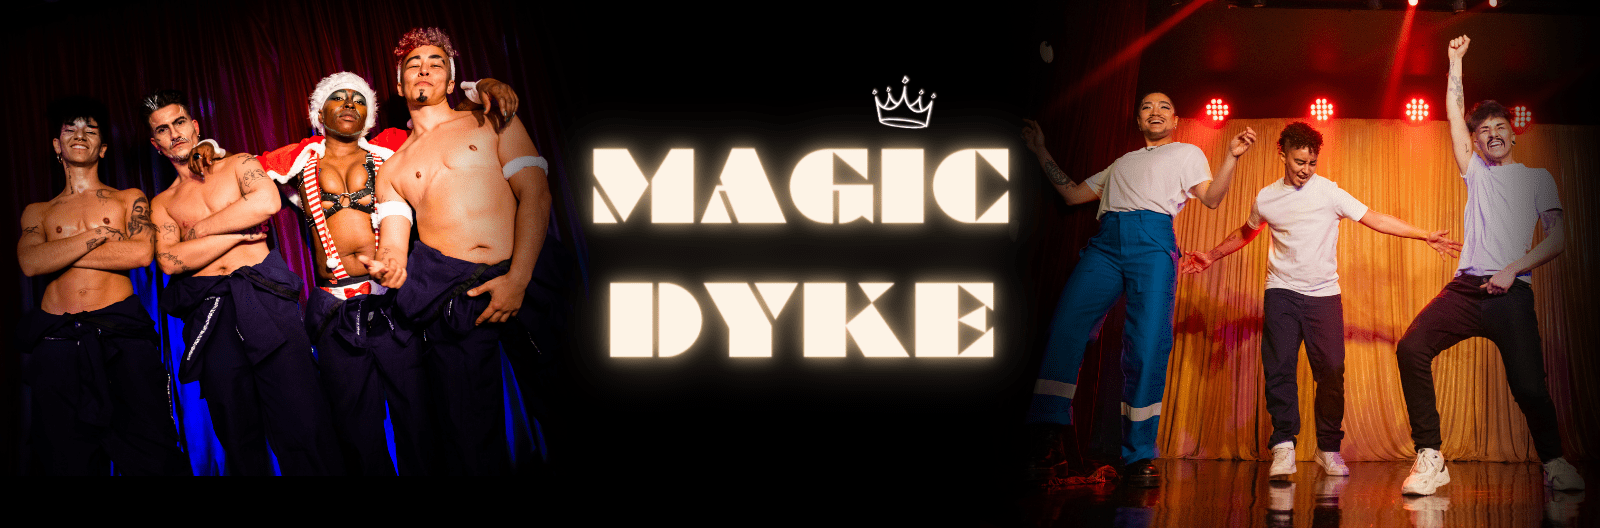 Magic Dyke: London Pride